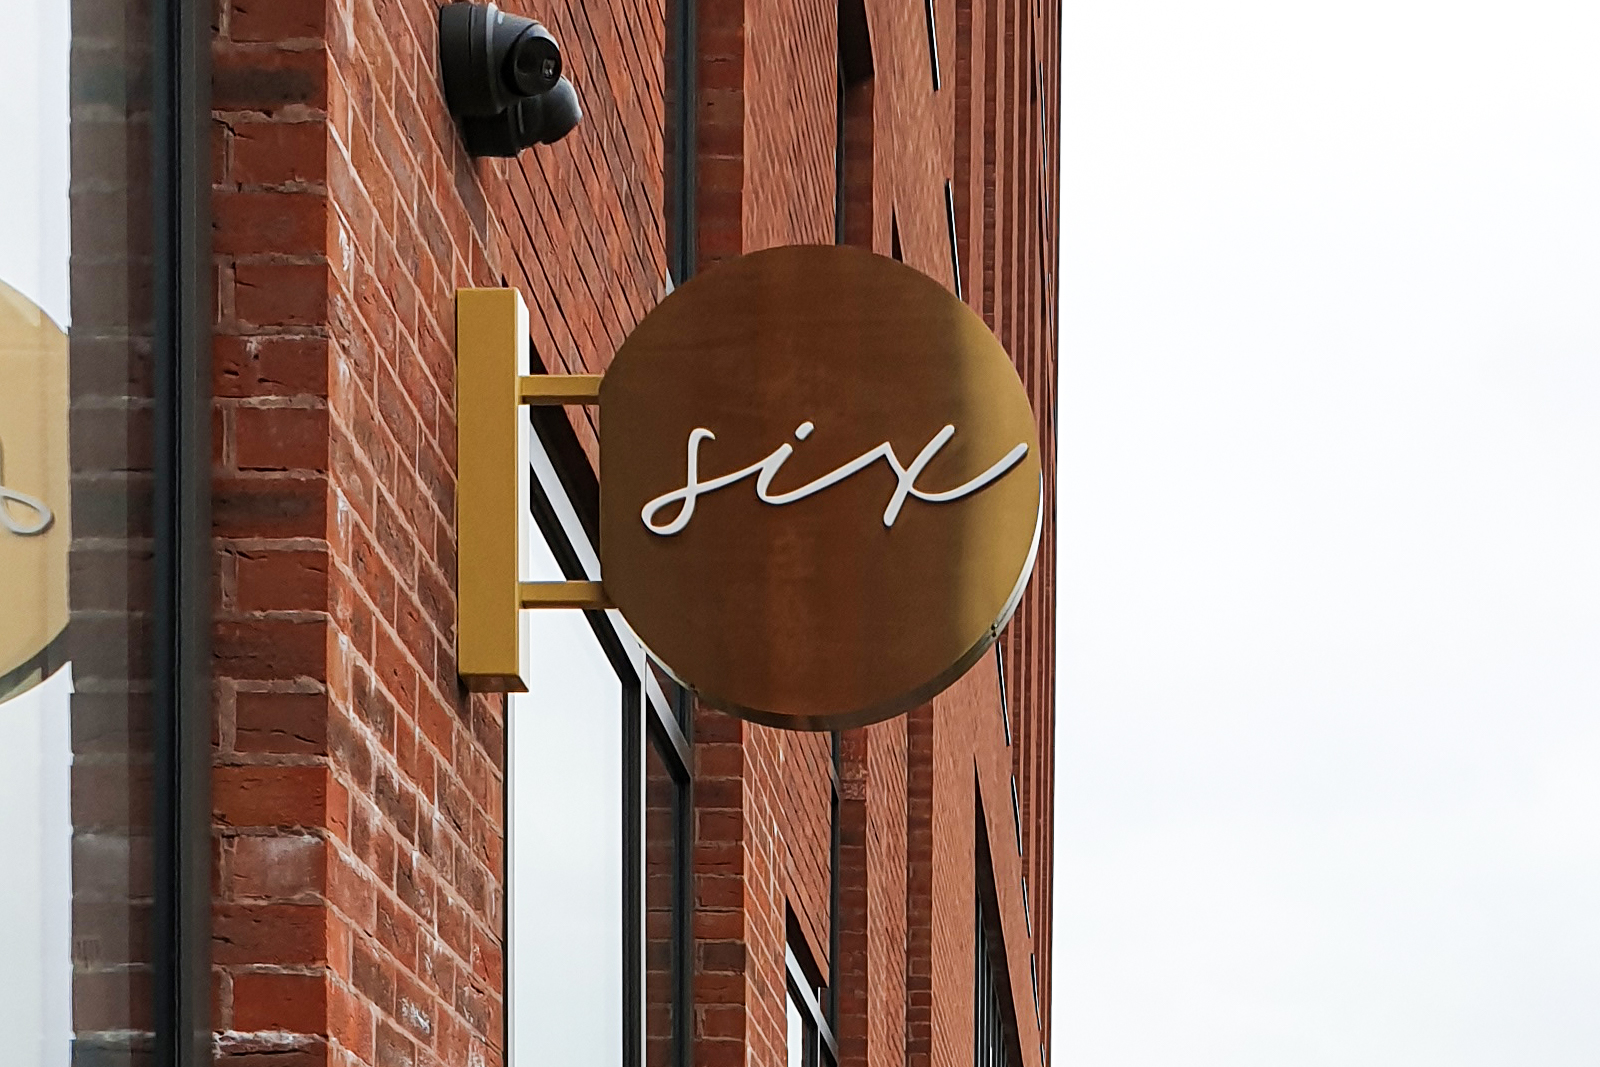 Restaurant Six signage within Hilton Garden Inn – Stoke on Trent